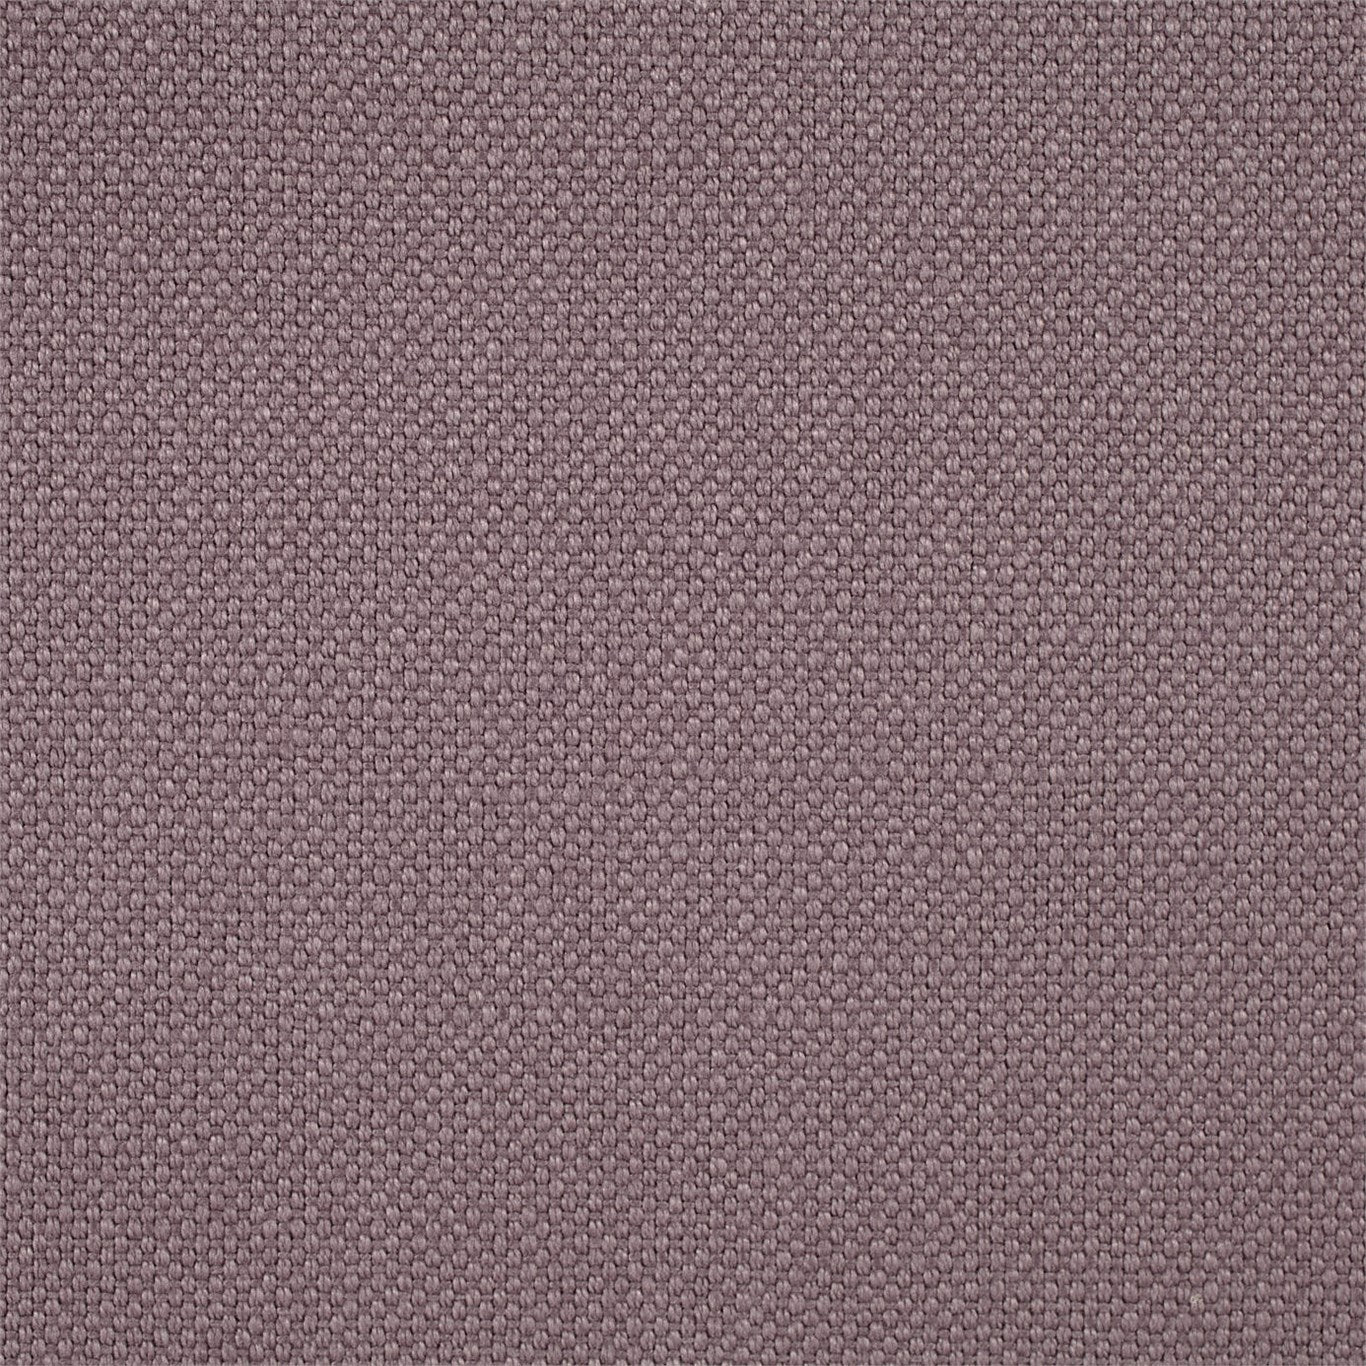 Arley Fabric by Sanderson - DALY245811 - Quartz